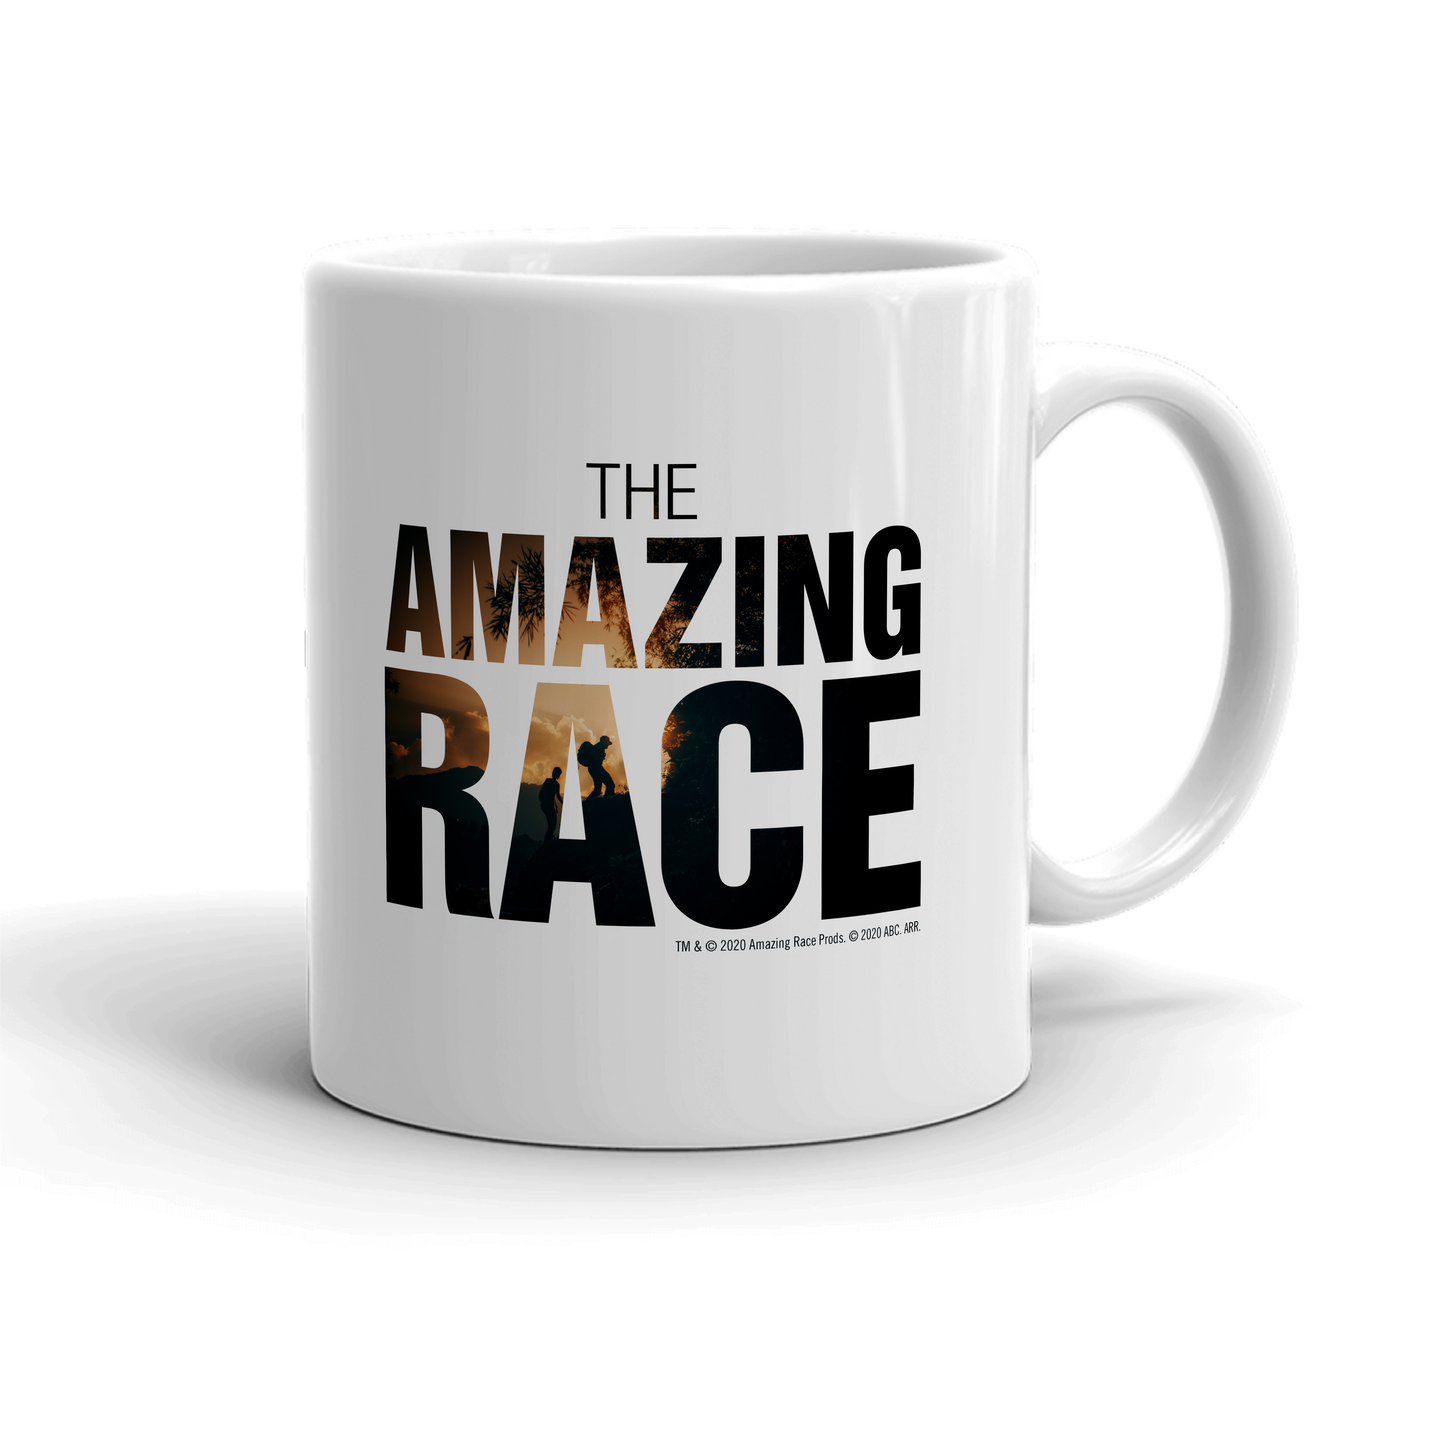 The Amazing Race One Million Miles White Mug